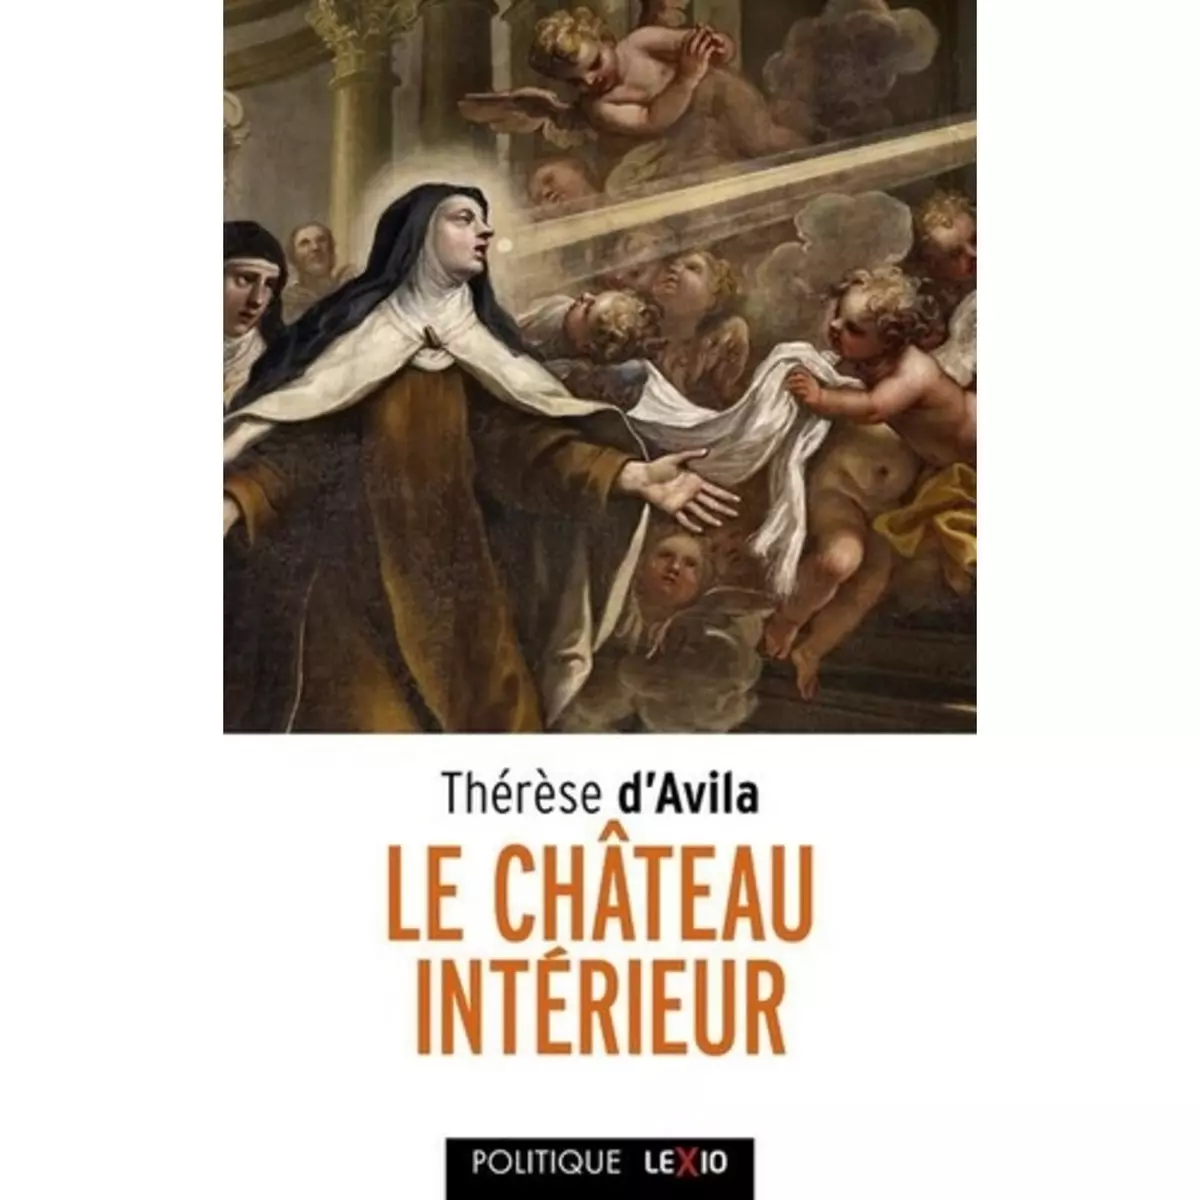  LE CHATEAU INTERIEUR, Sainte Thérèse d'Avila